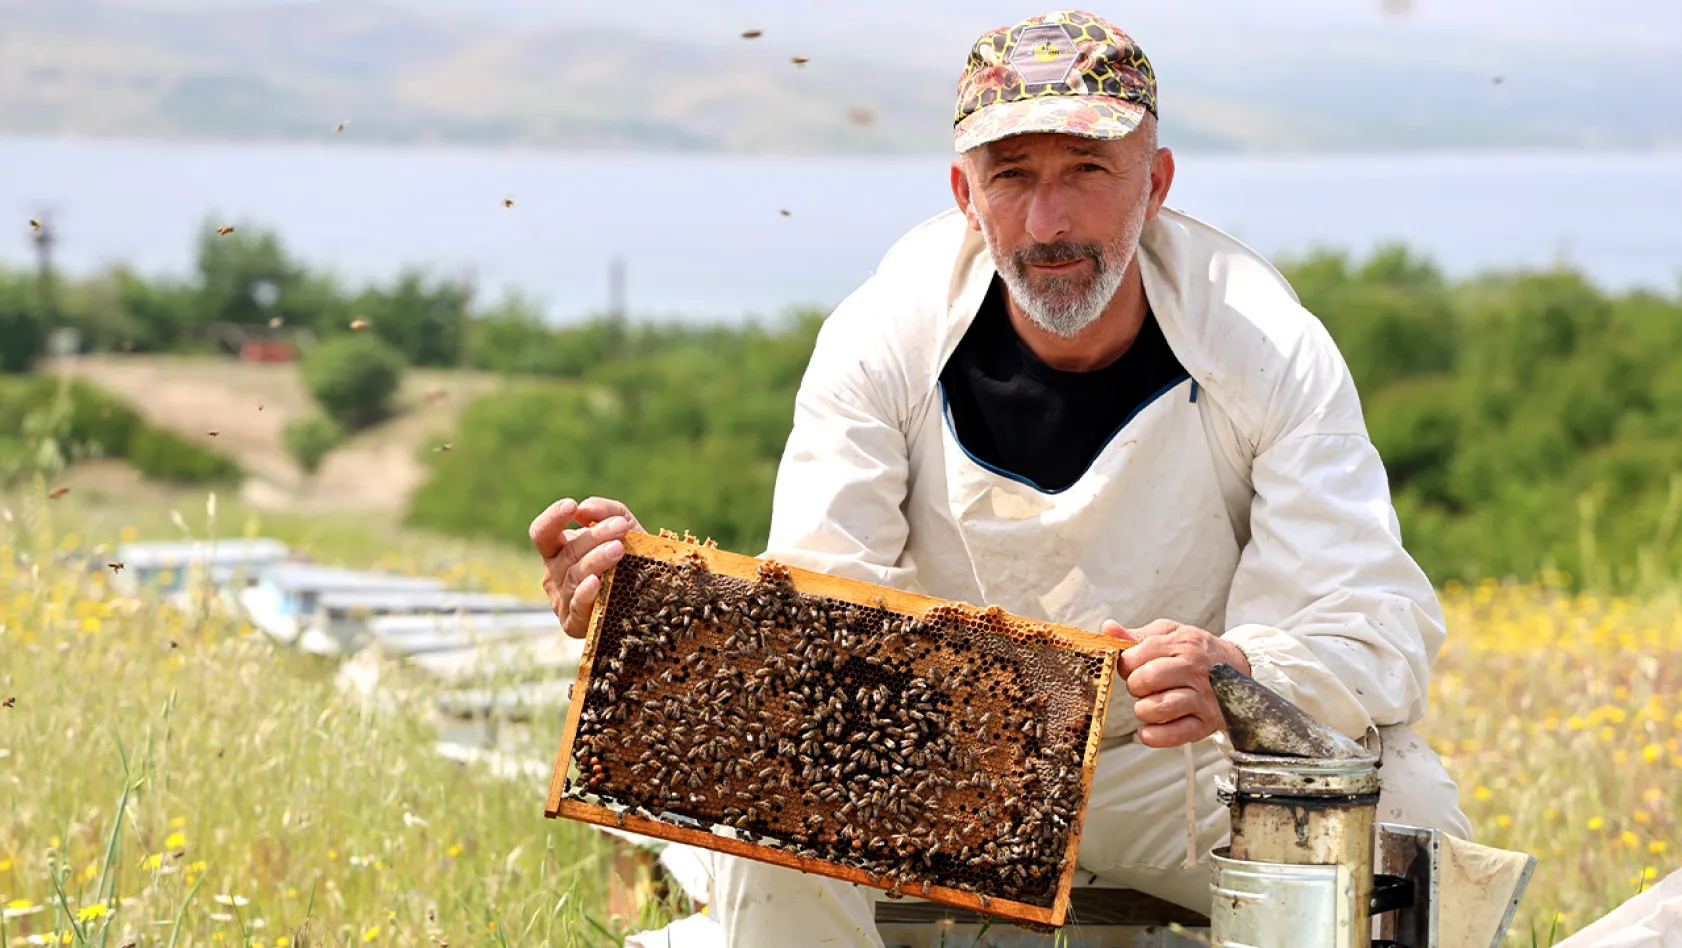 Toz taşınımı arıların hayatını zorlaştırıyor